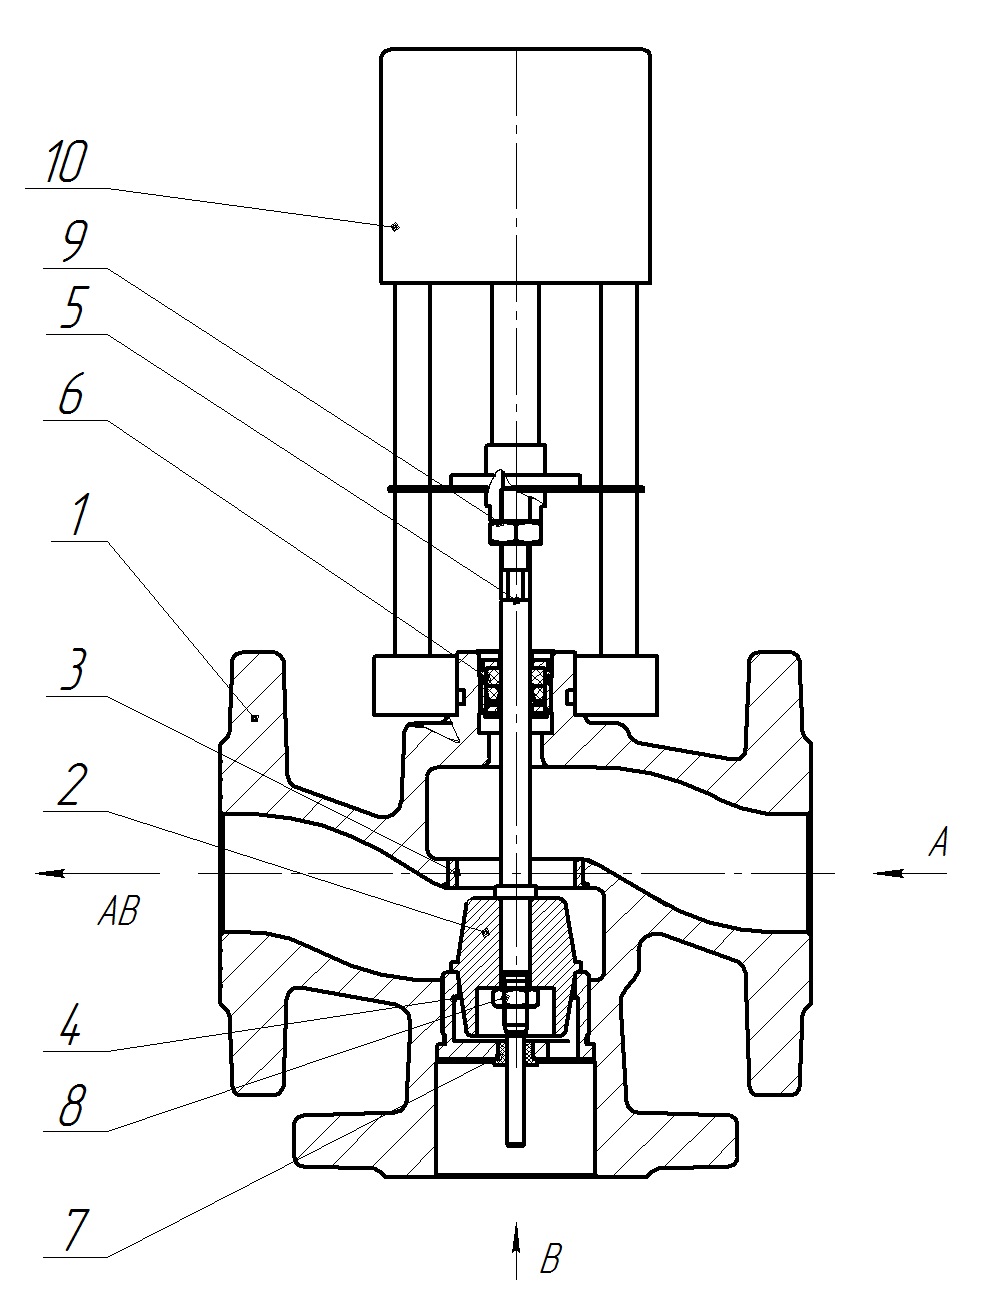 Клапан регулирующий трехходовой разделительный DN.ru 23ч901нж Ду20 Ру16 Kvs4 серый чугун СЧ20, фланцевый, Tmax до 150°С с электроприводом Катрабел TW-500-XD220